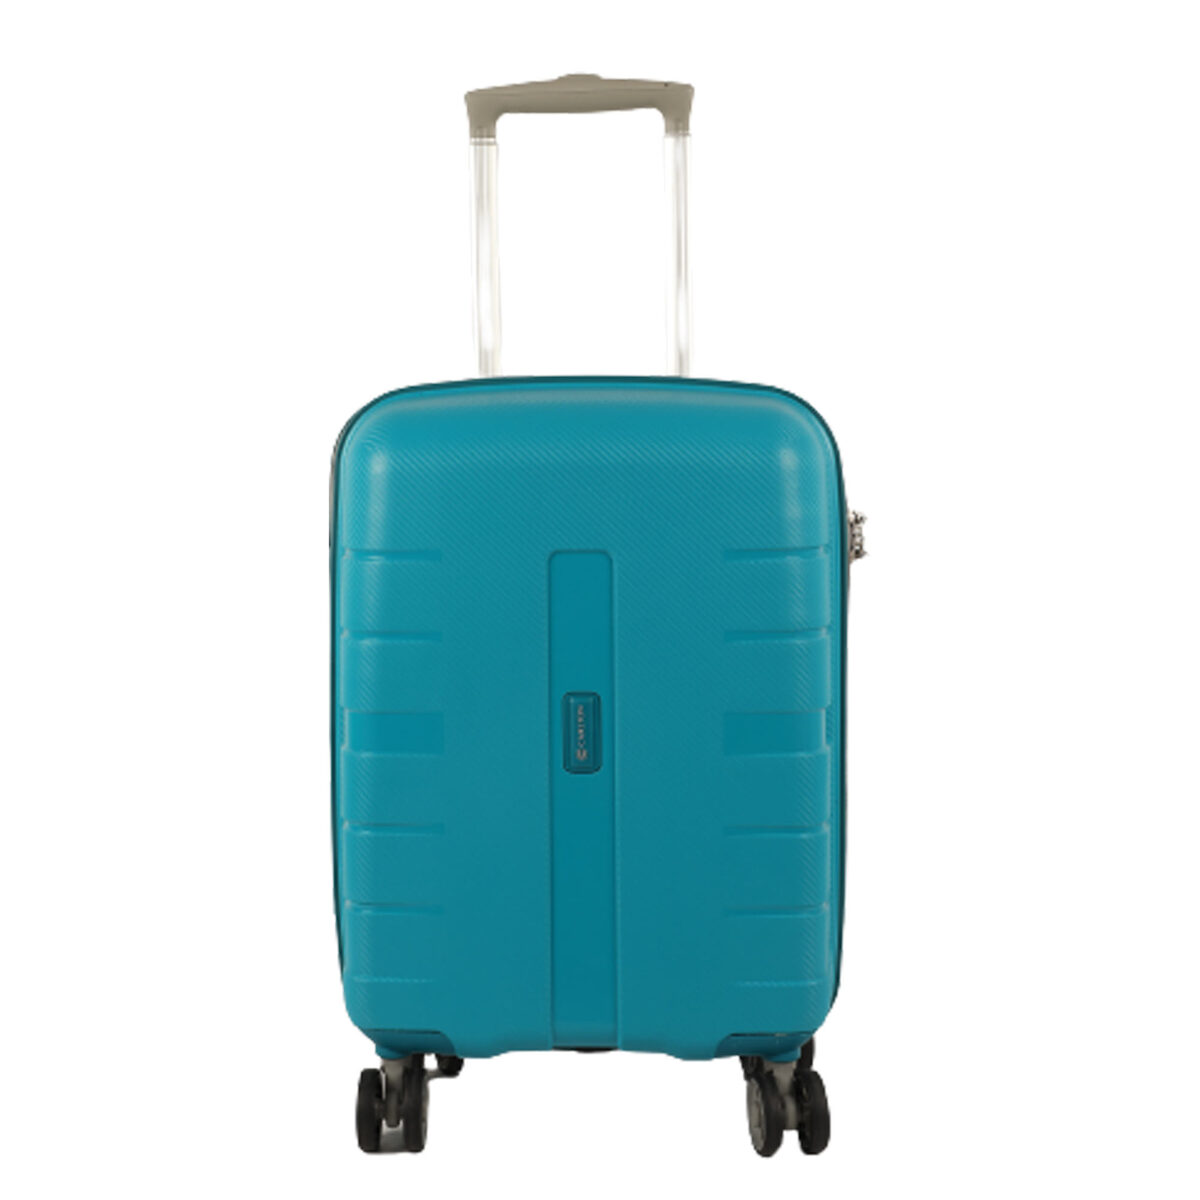 كارلتون فوياجر حقيبة سفر صلبة بـ4 عجلات 55 سم أزرق مخضر